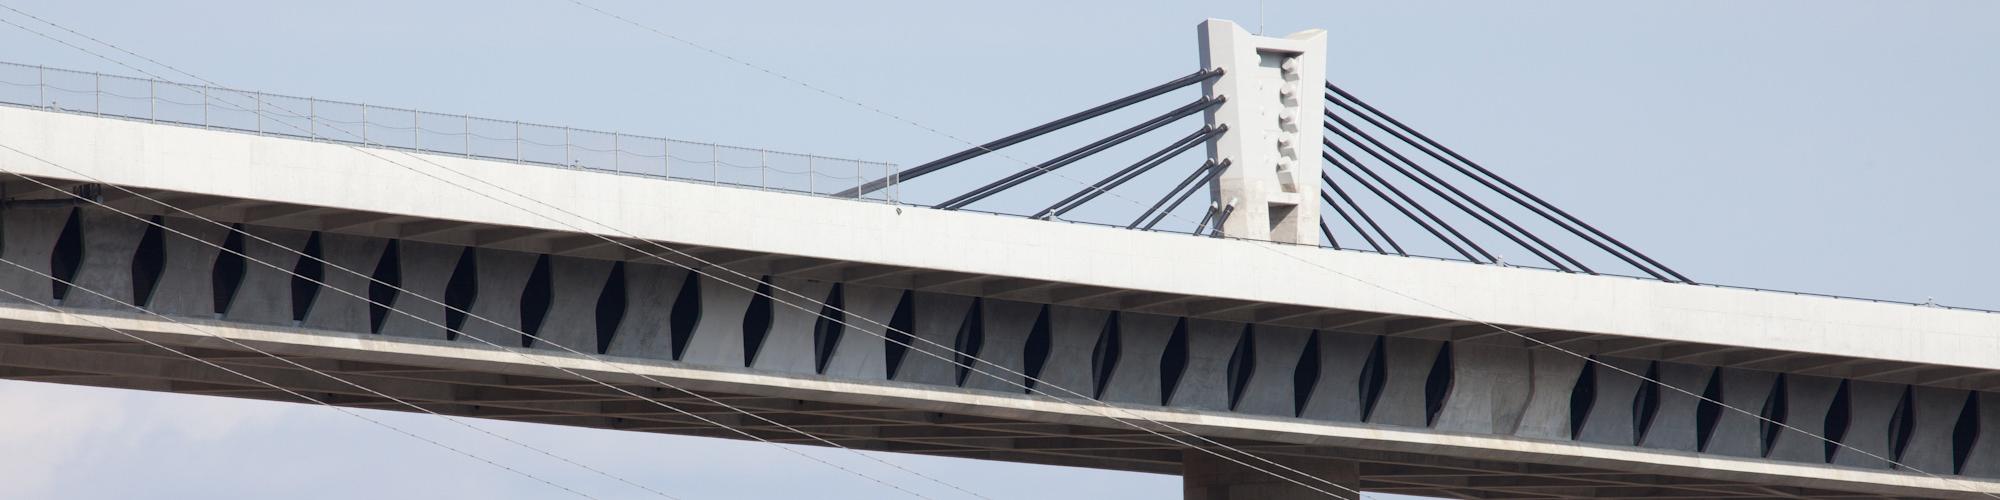 新名神プロジェクトを支えたPC鋼材技術〜武庫川橋・安威川橋・楊梅山高架橋〜